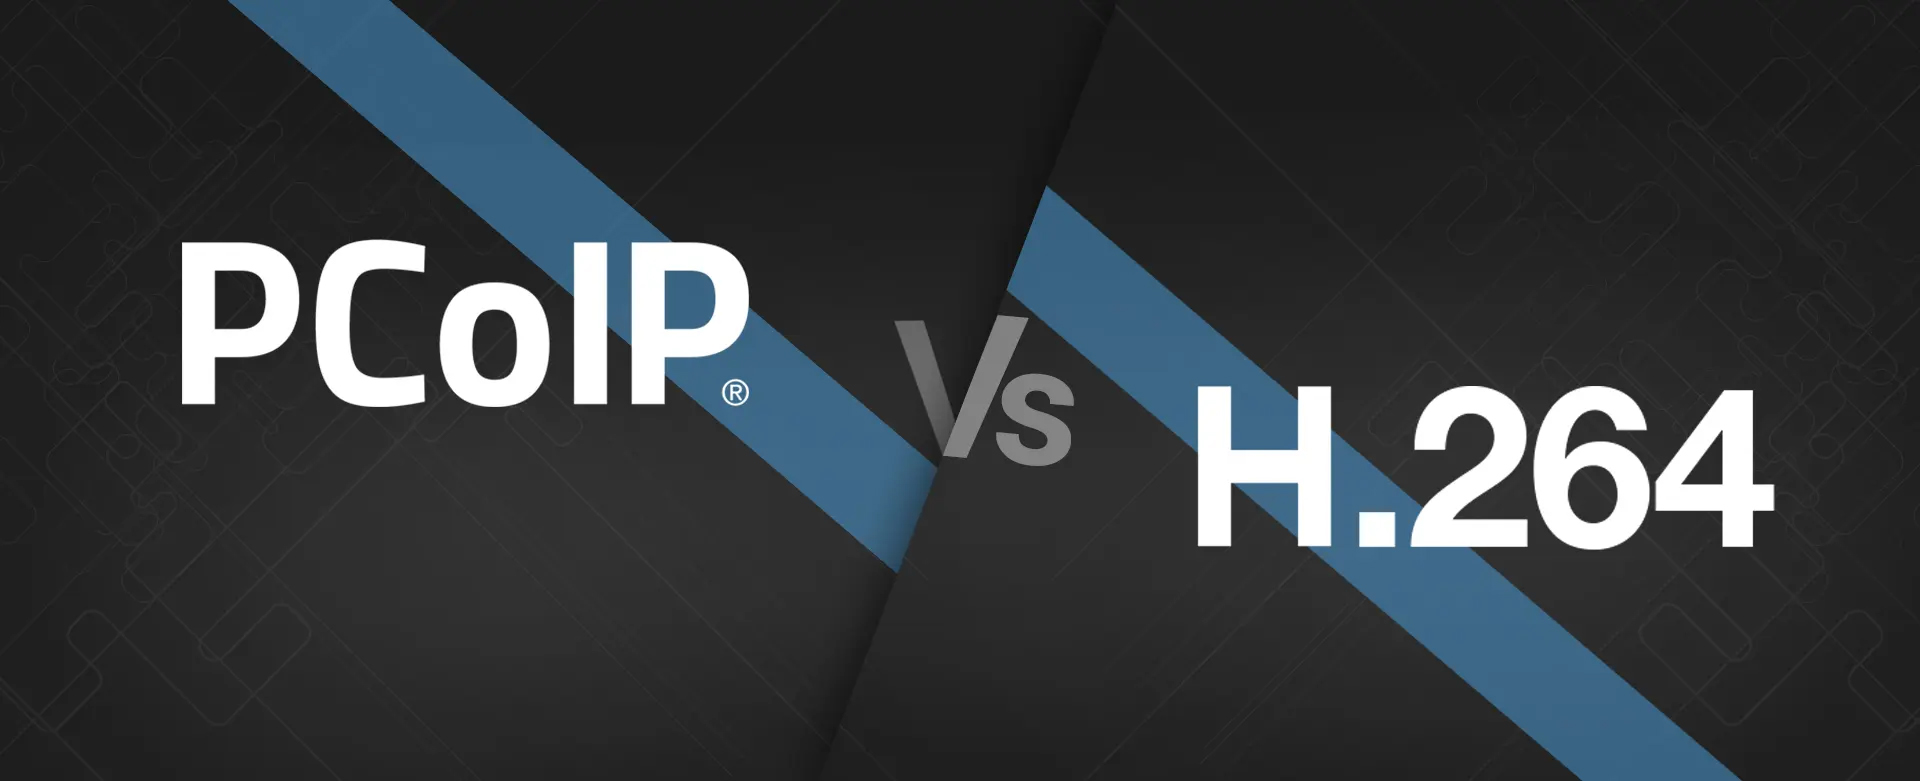 PCoIP vs H.264 6